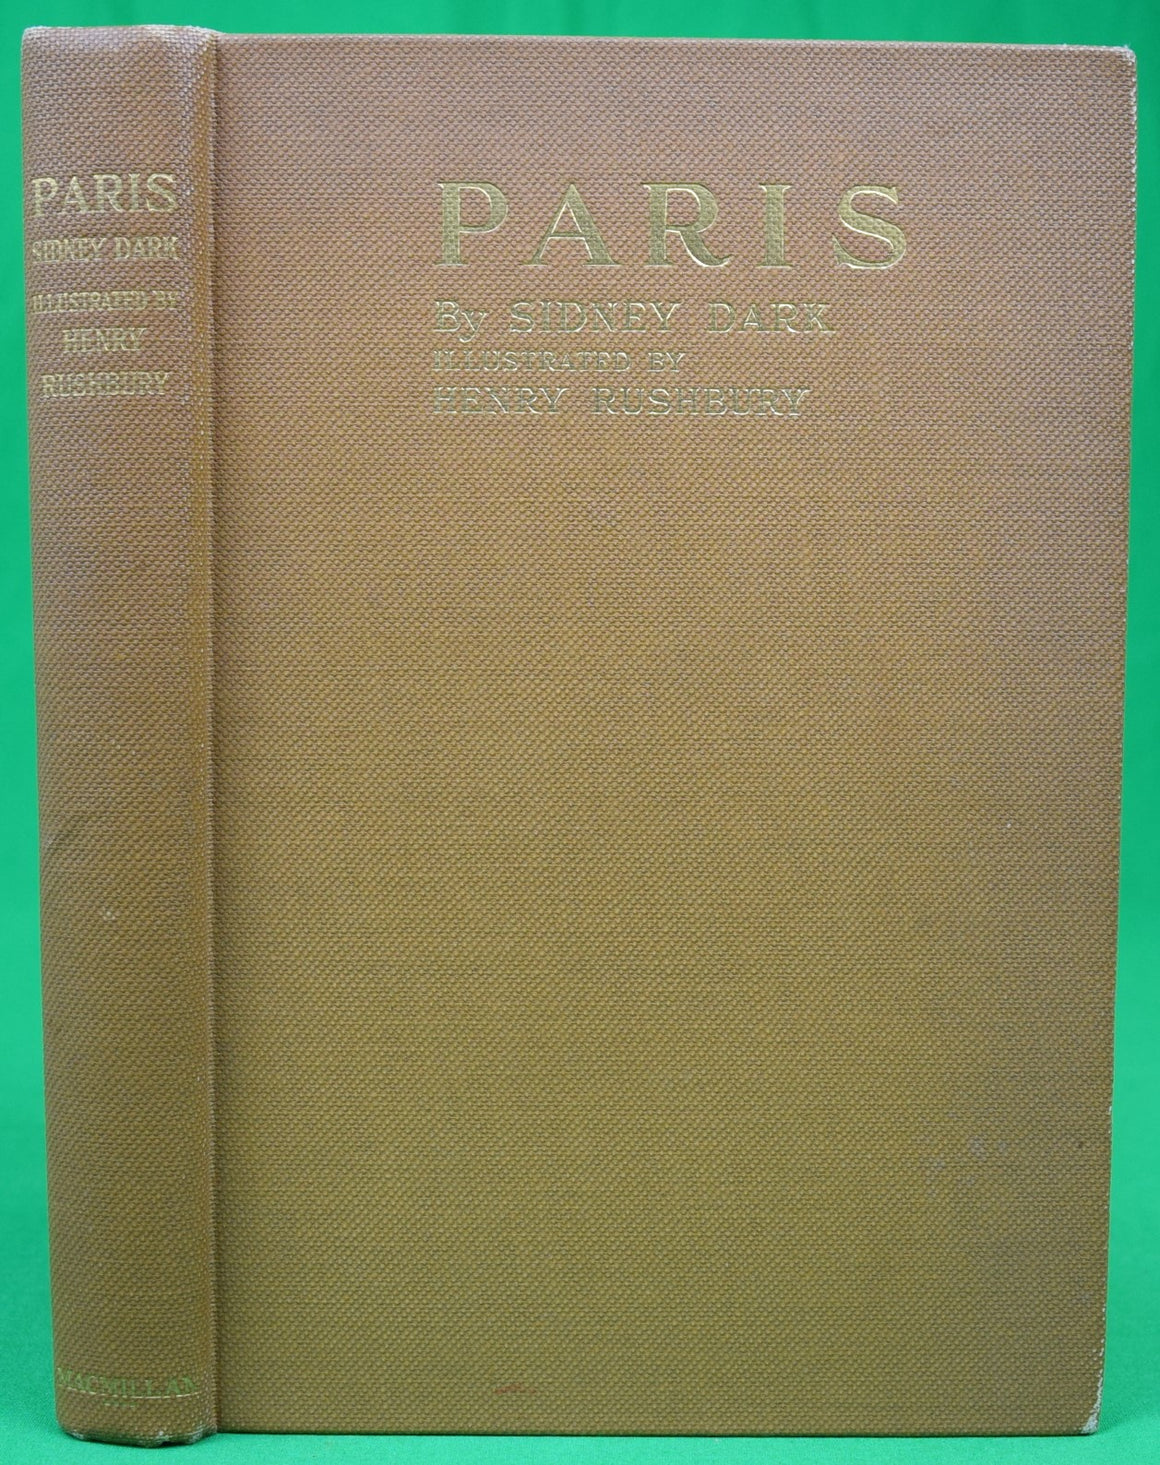 "Paris" 1926 DARK, Sidney